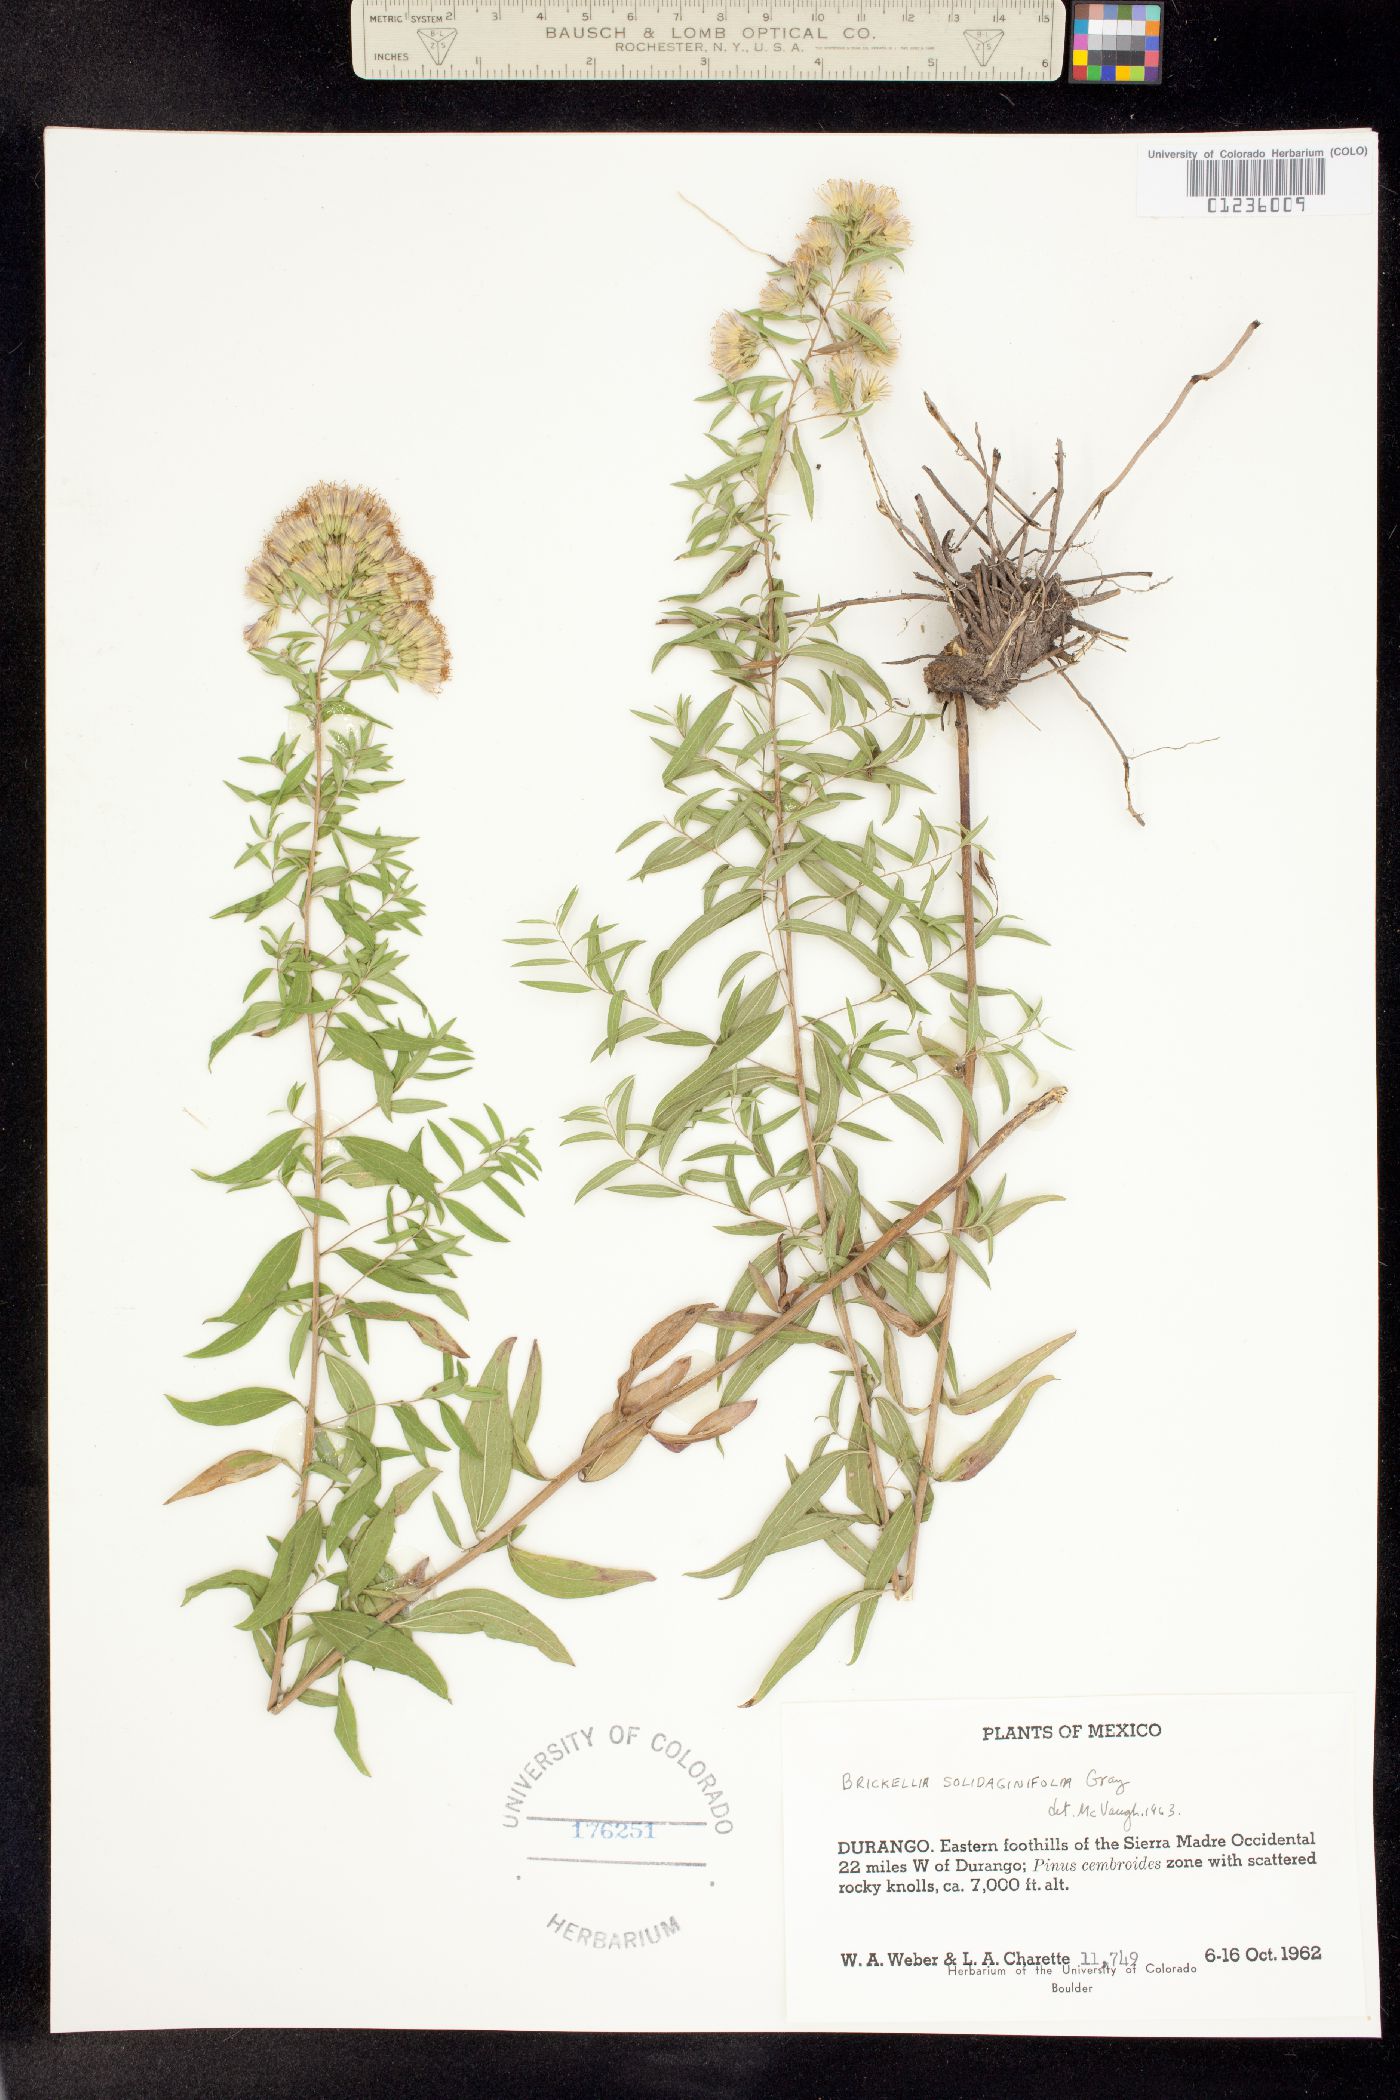 Brickellia solidaginifolia image